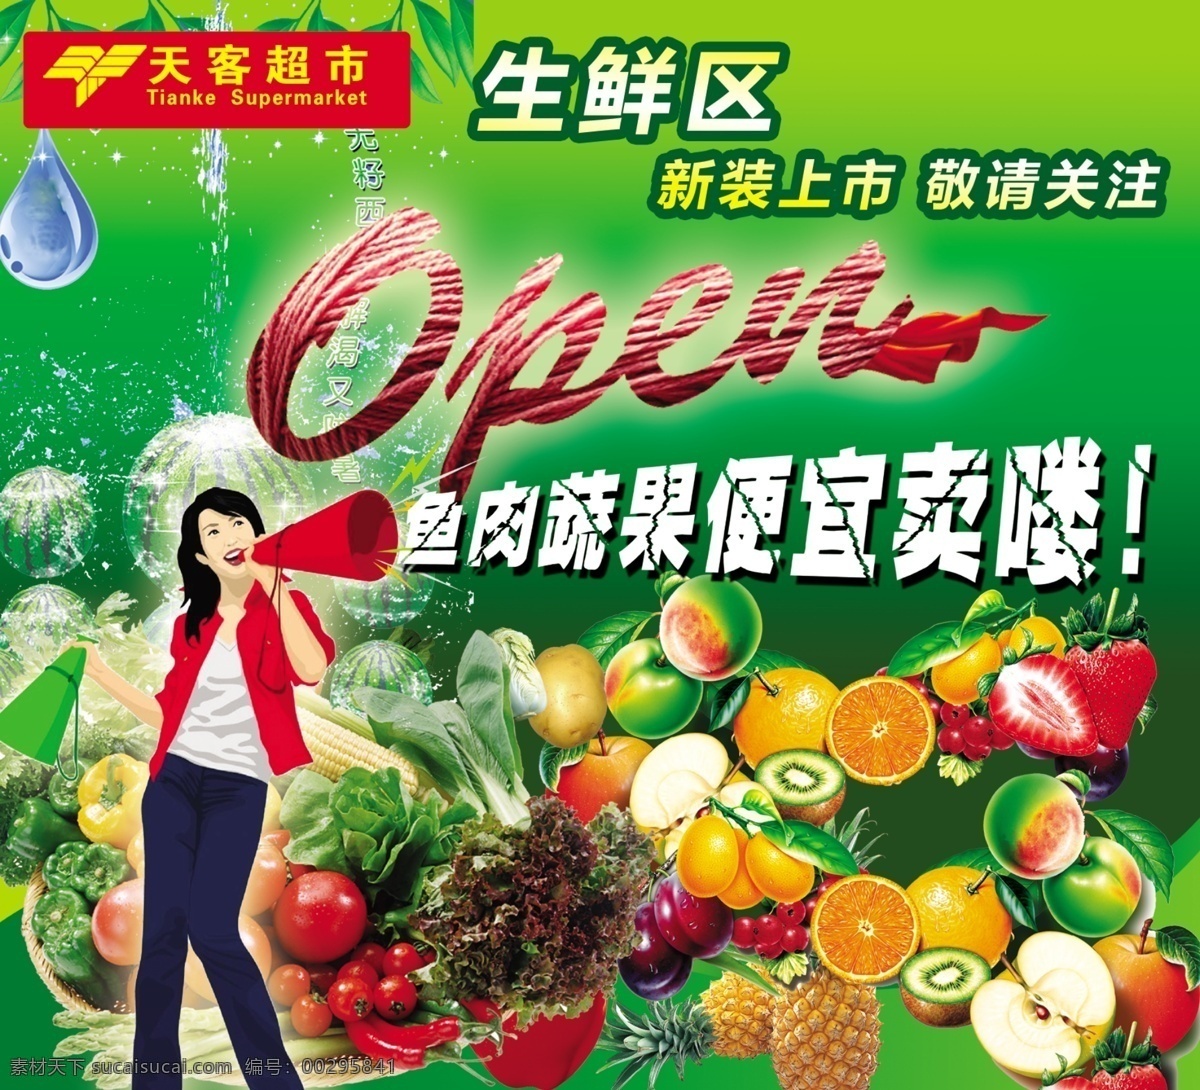 商场生鲜 生鲜 天客超市 西瓜 桃子 矢量女 国内广告设计 广告设计模板 源文件